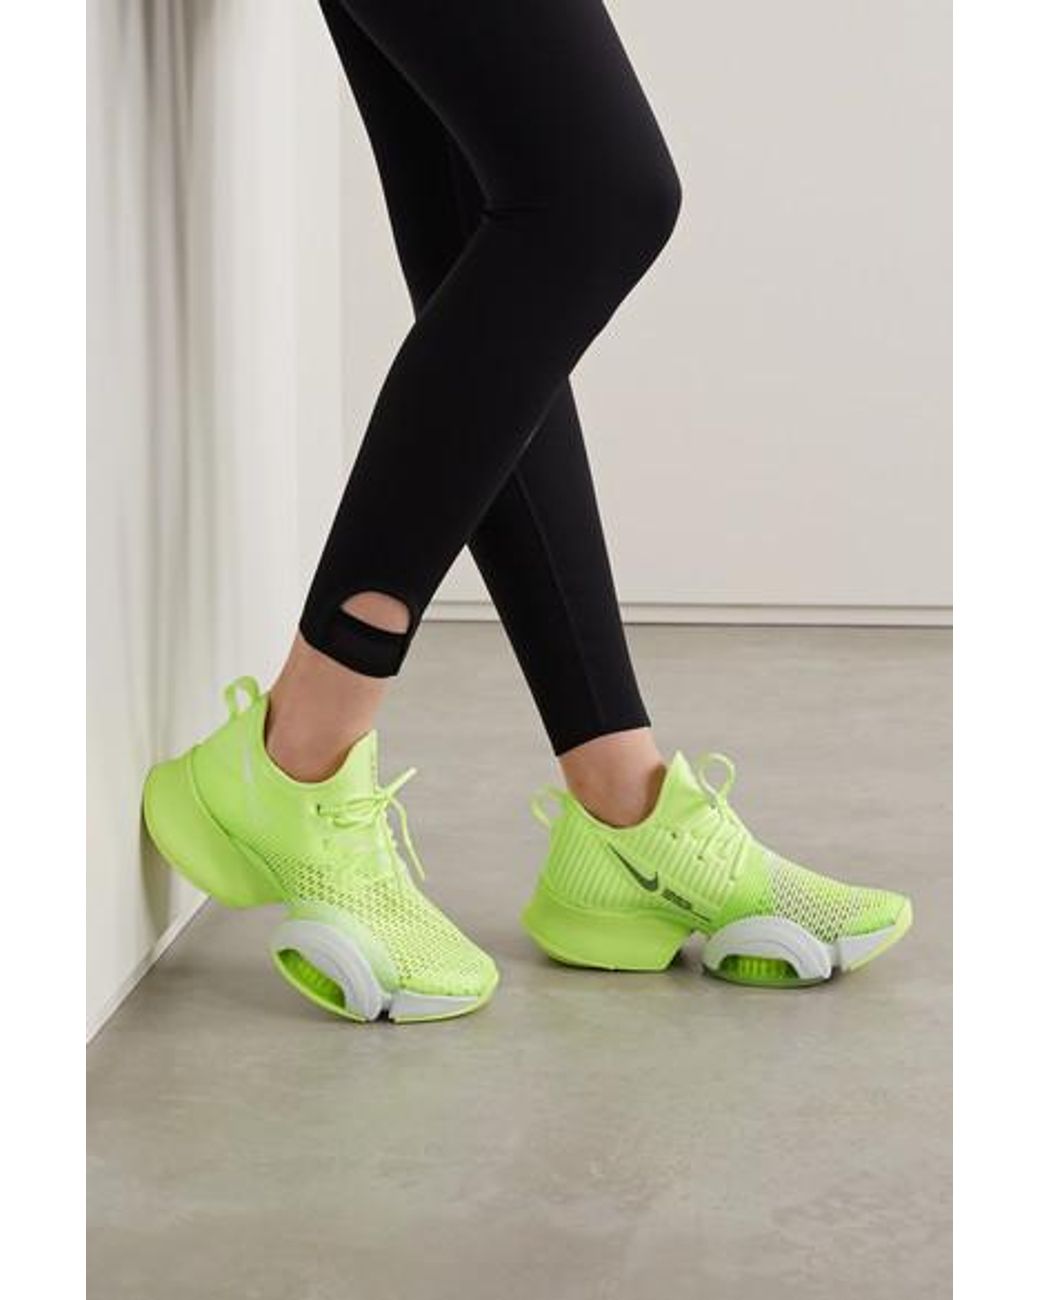 Nike Air Zoom Superrep Neoprene And Mesh Sneakers in Green | Lyst